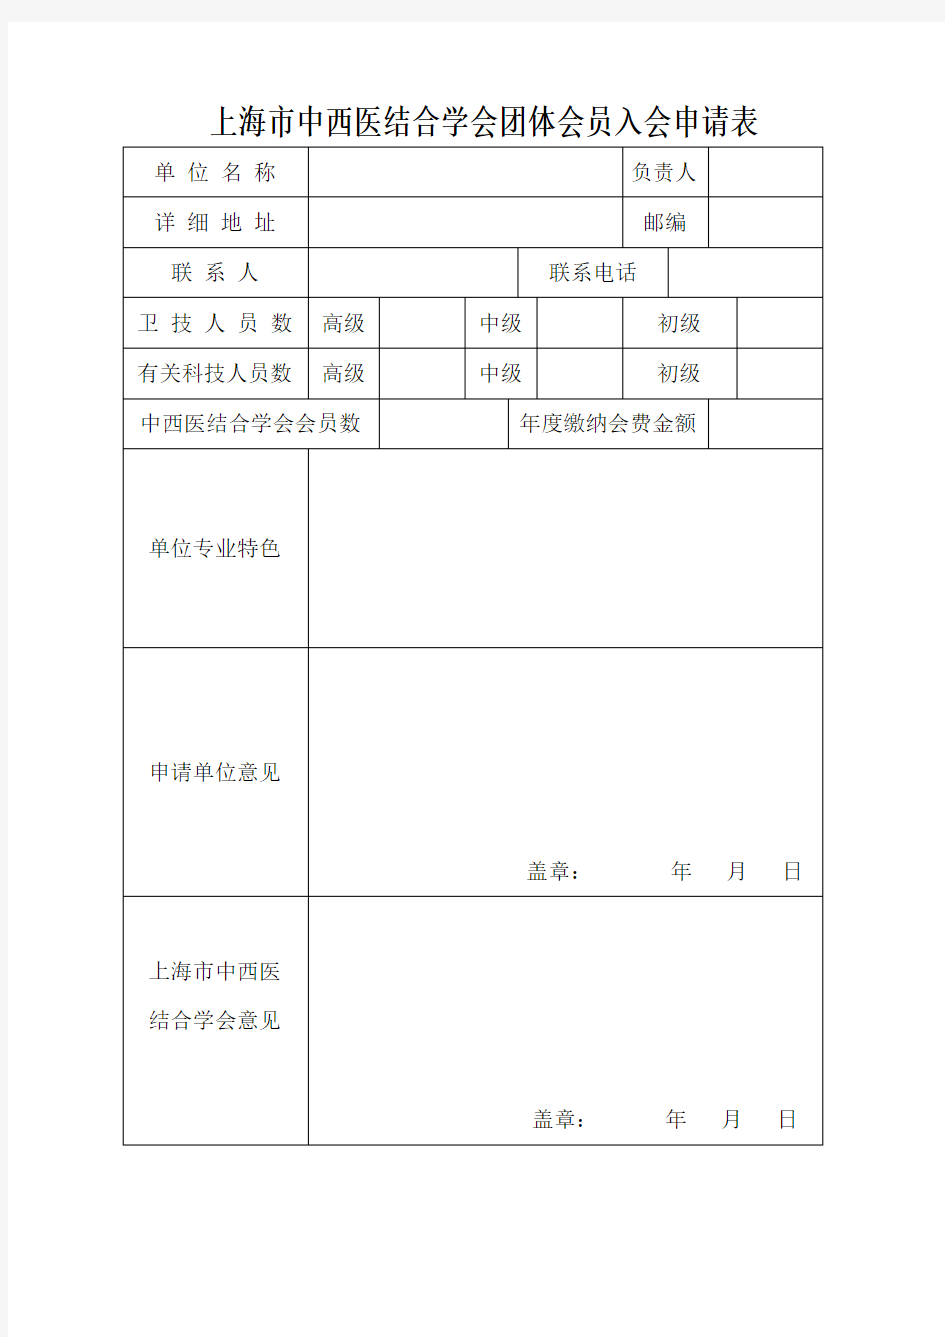 上海中西医结合学会团体会员入会申请表